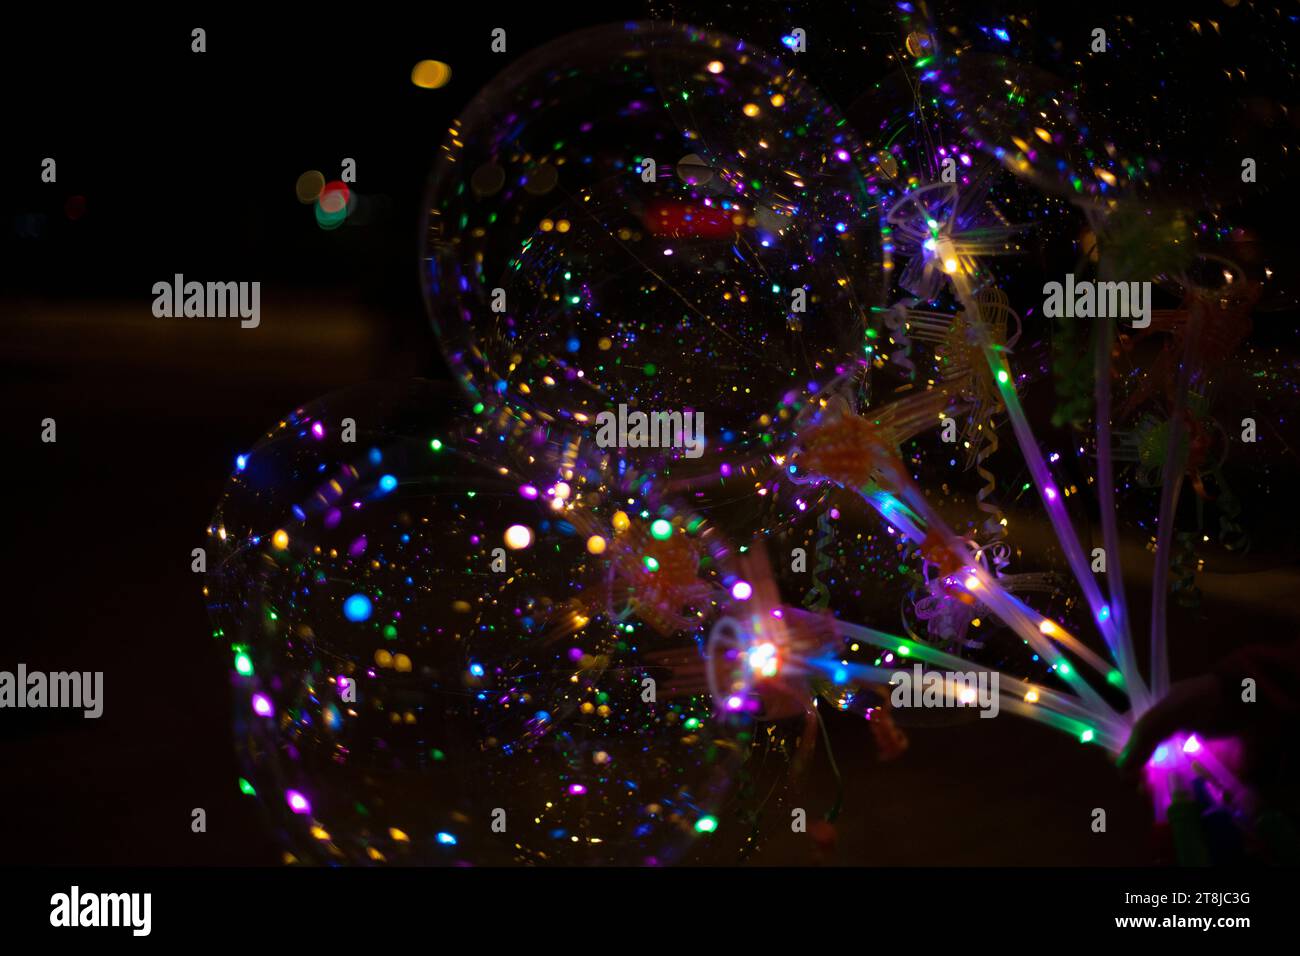 Globo led fotografías e imágenes de alta resolución - Alamy